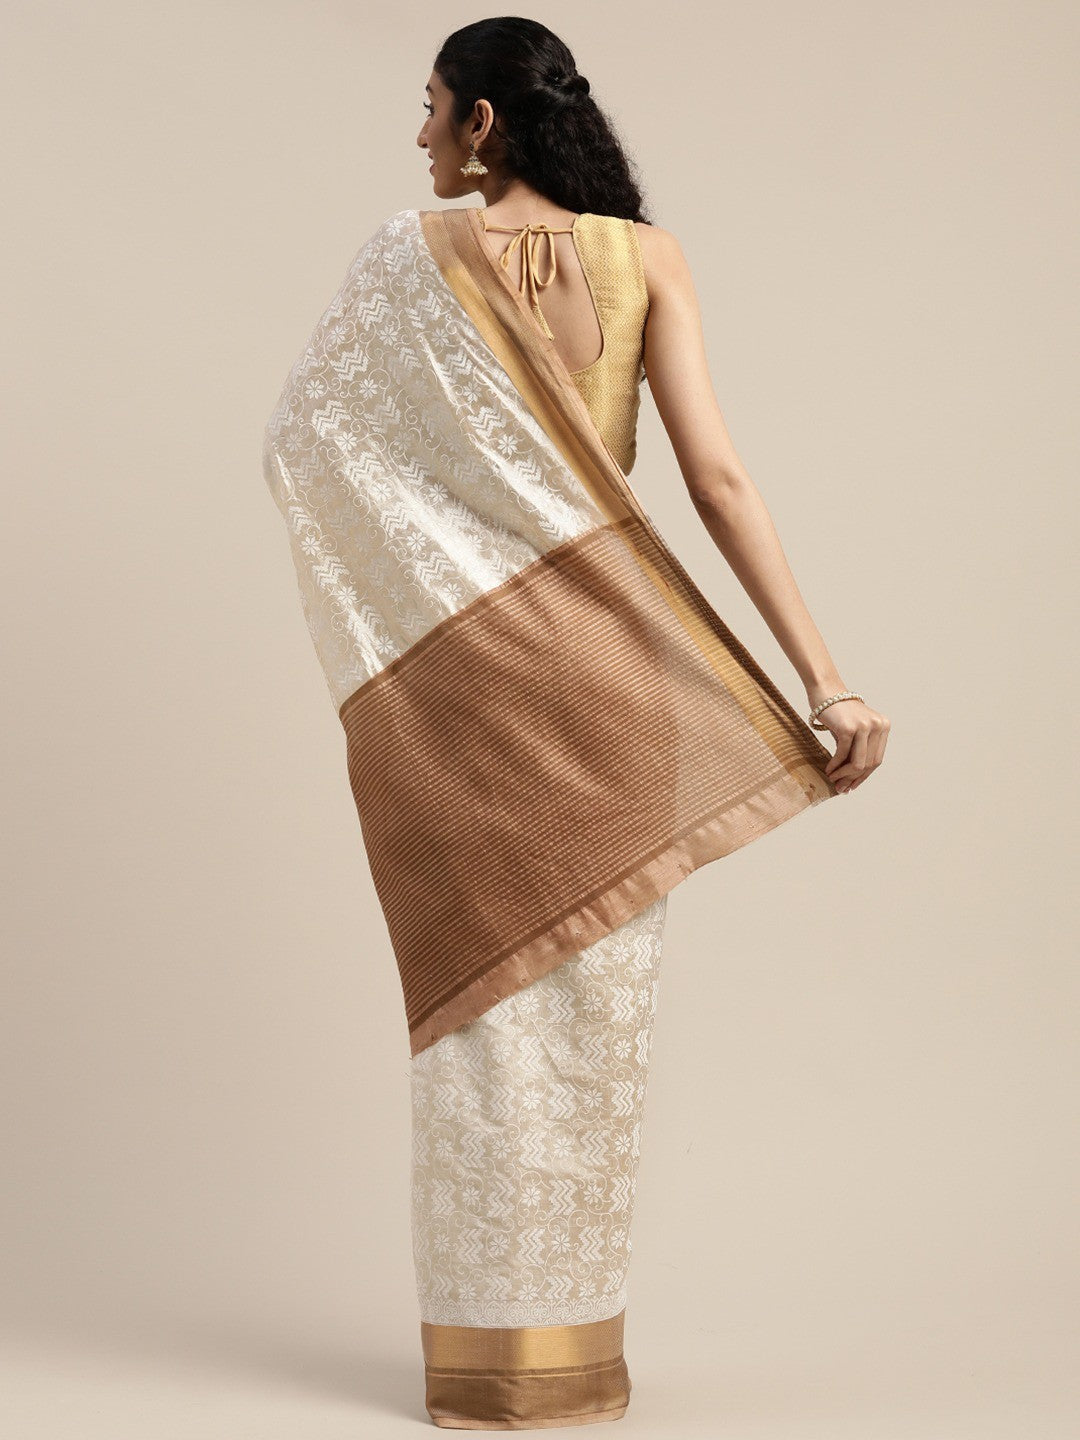 Women's White Art Silk Printed Saree - Ahika